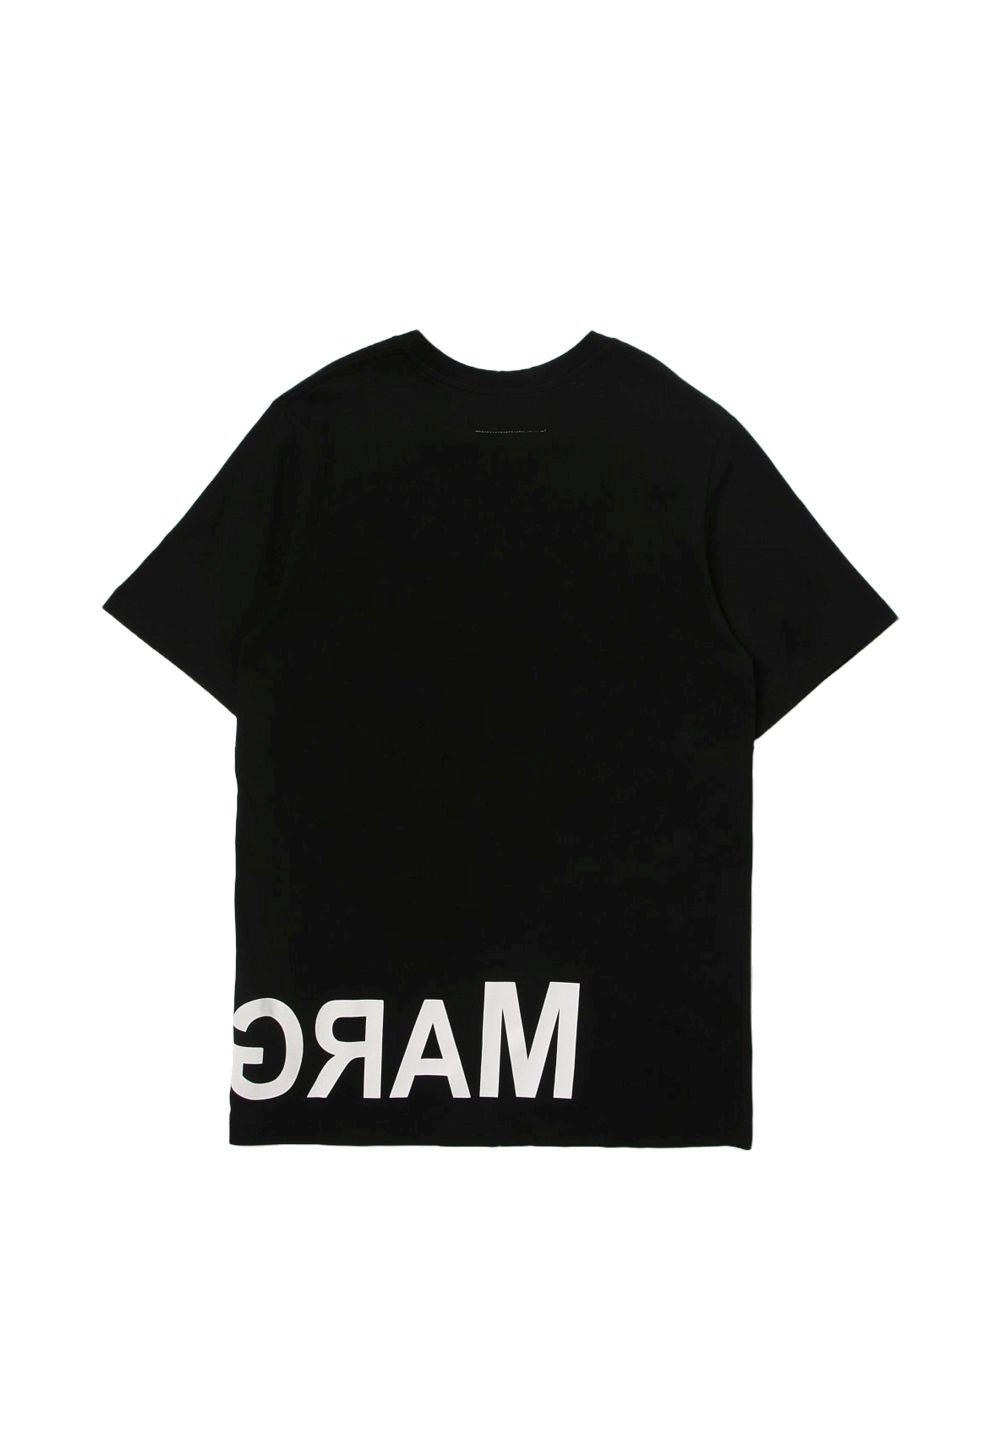 Black t-shirt for girls